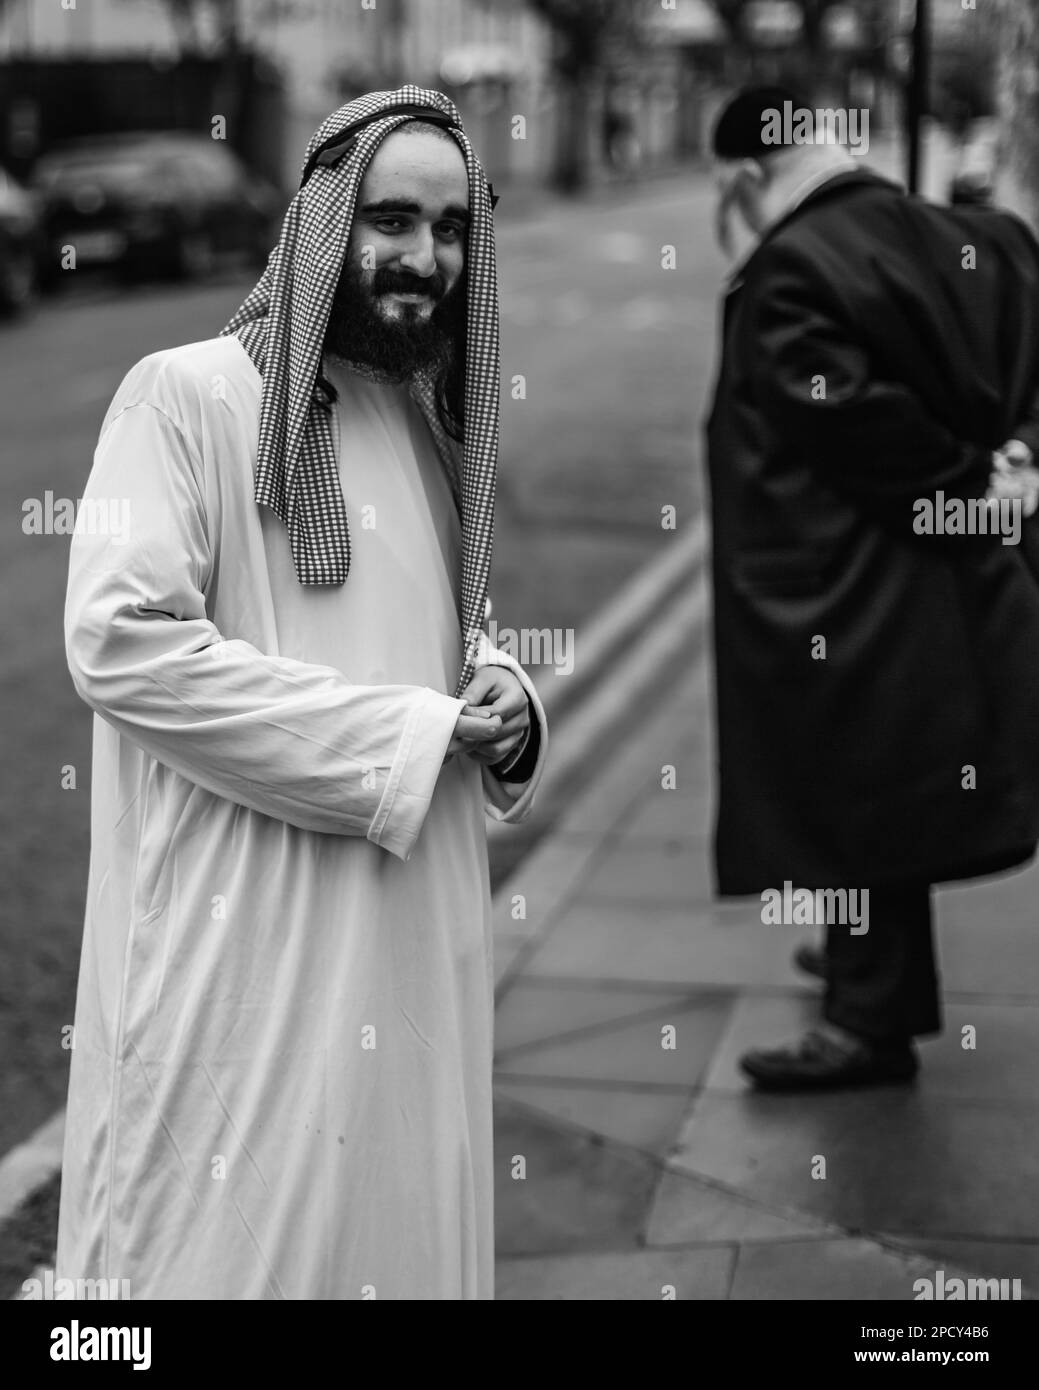 Immagine in bianco e nero di un uomo vestito da arabo a Purim, il Mardi Gras ebraico a Londra. Foto Stock